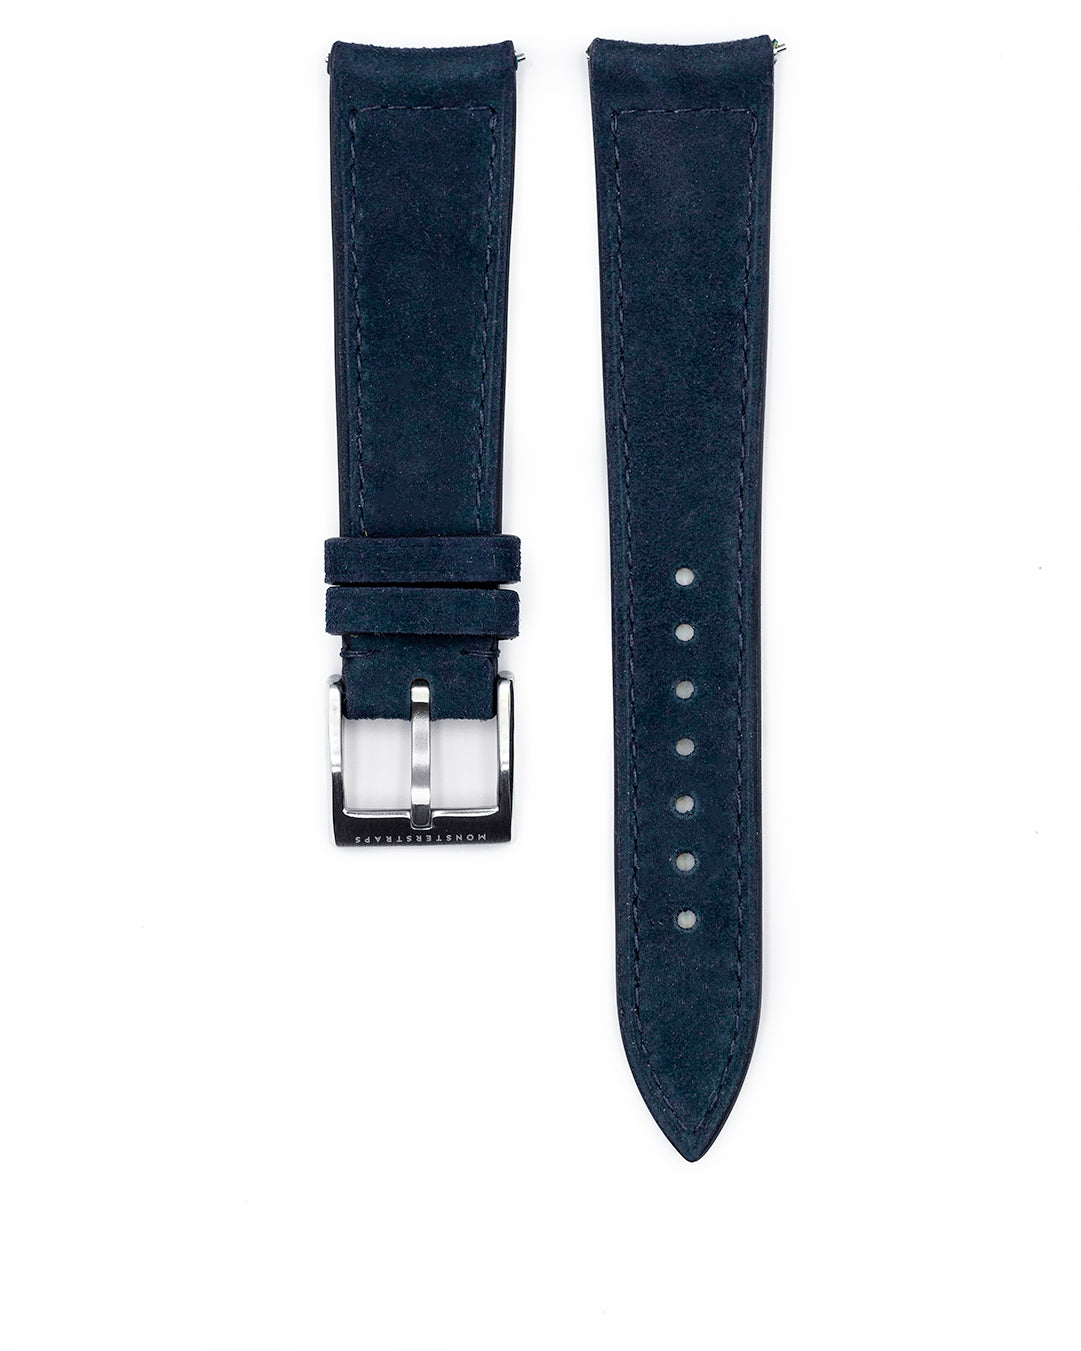 Suede Leather Strap (Dark Blue)